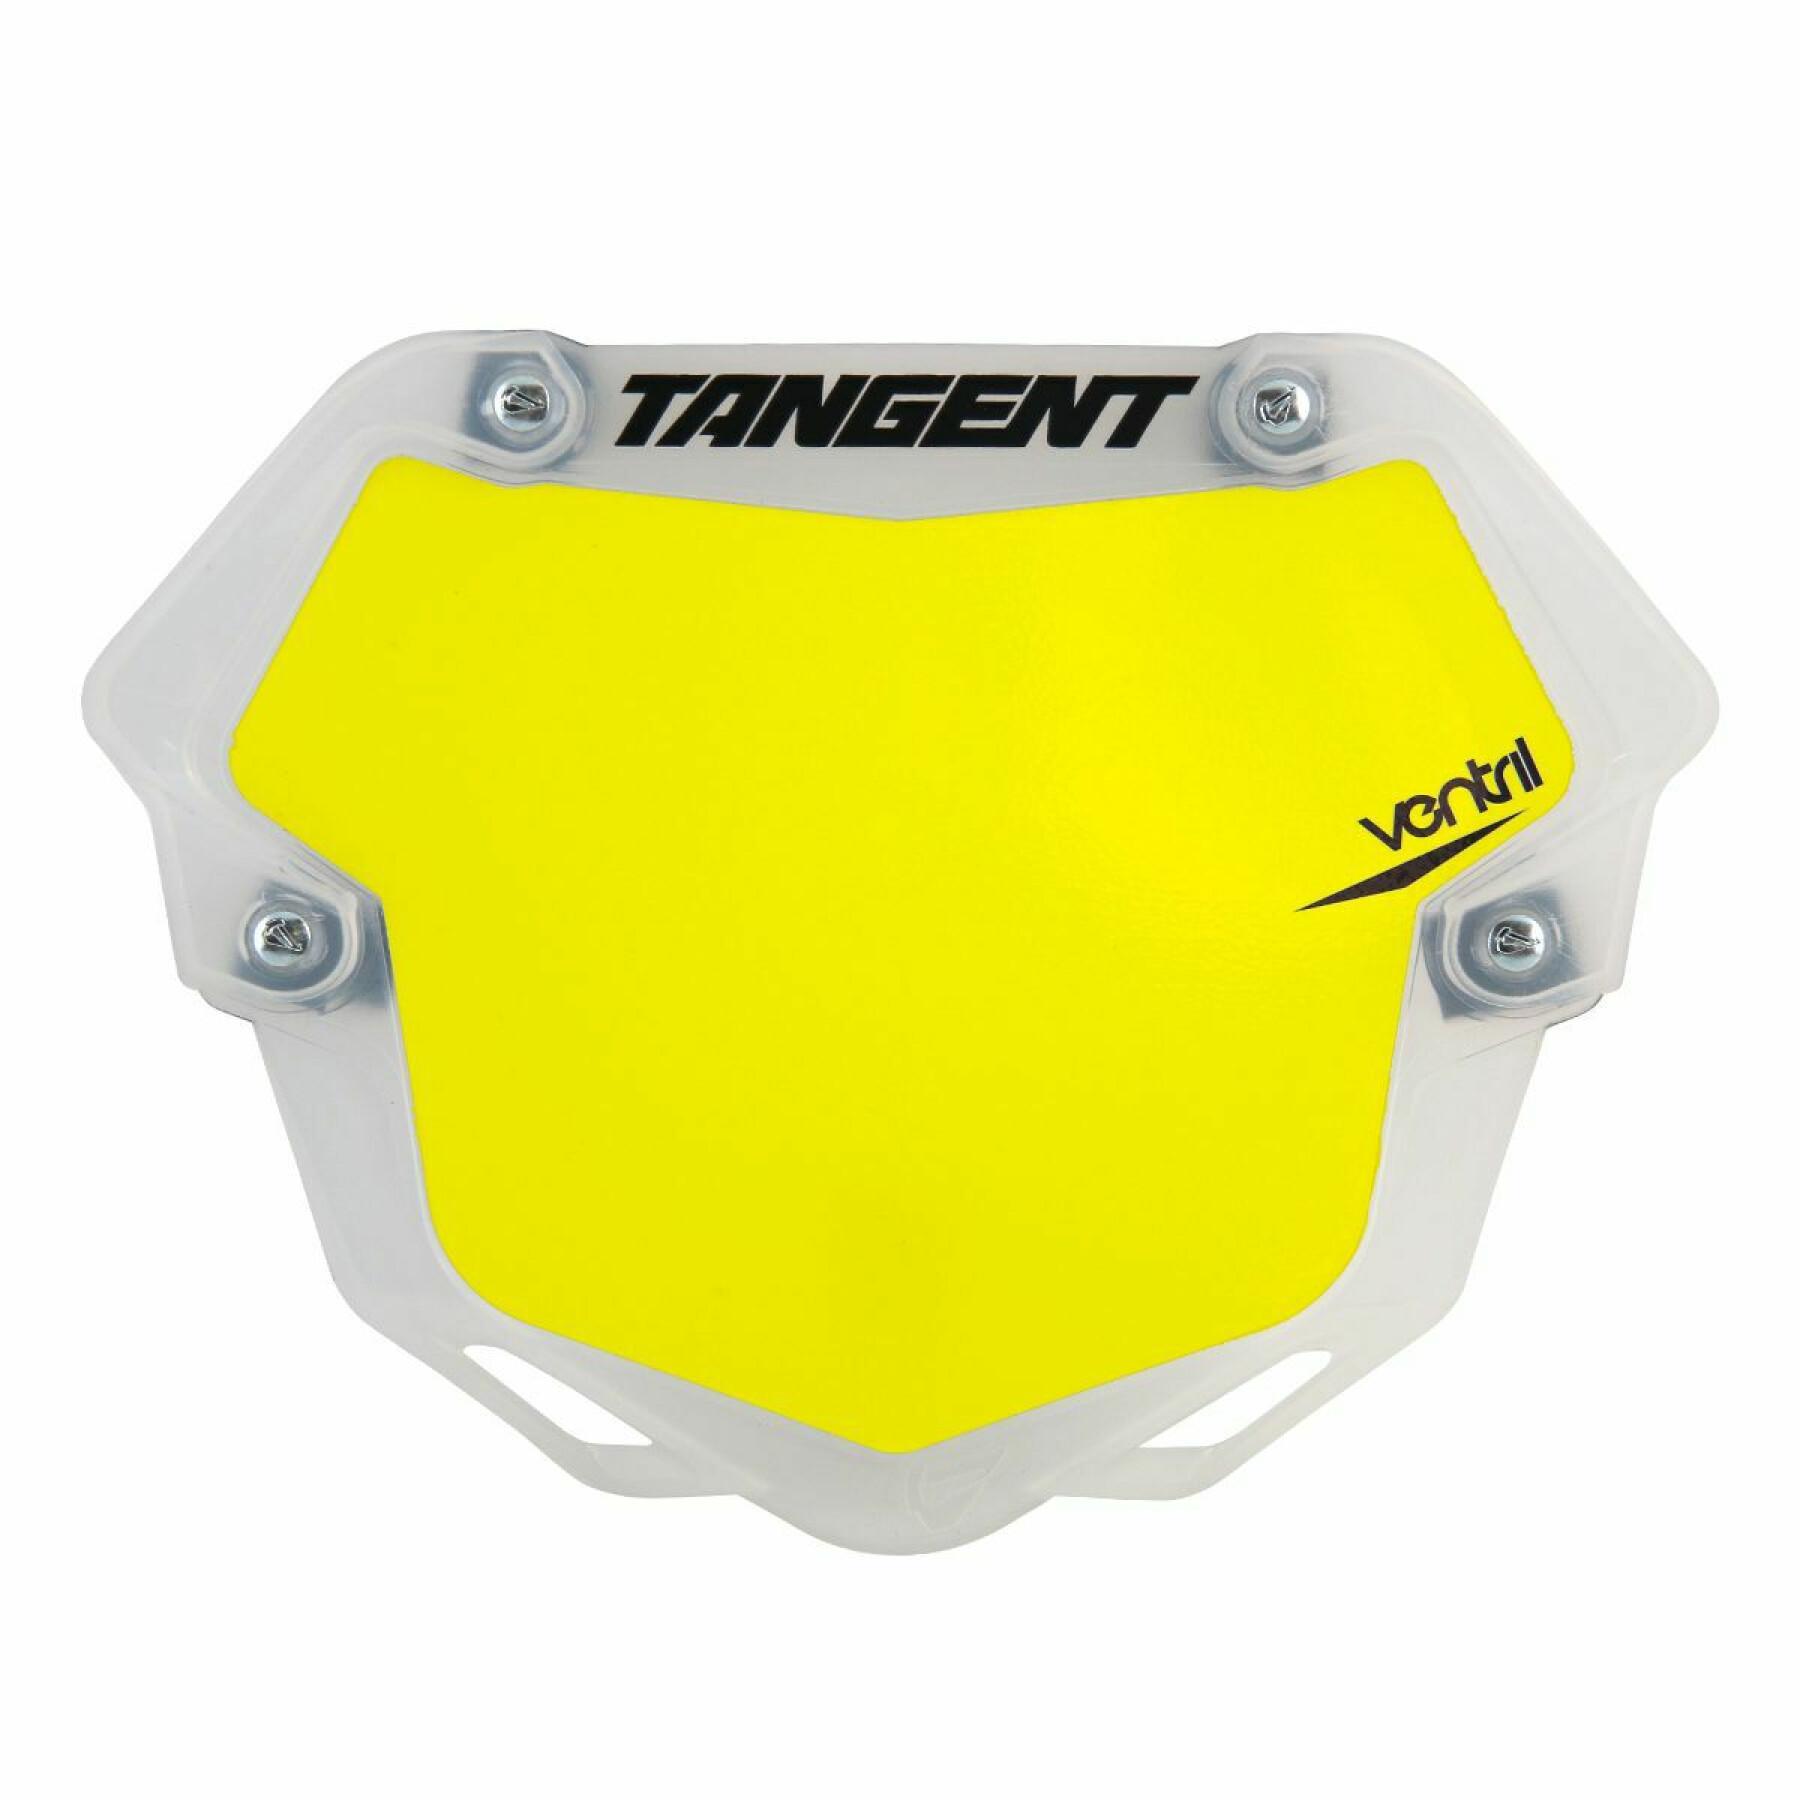 Platte Tangent ventril 3d trans pro